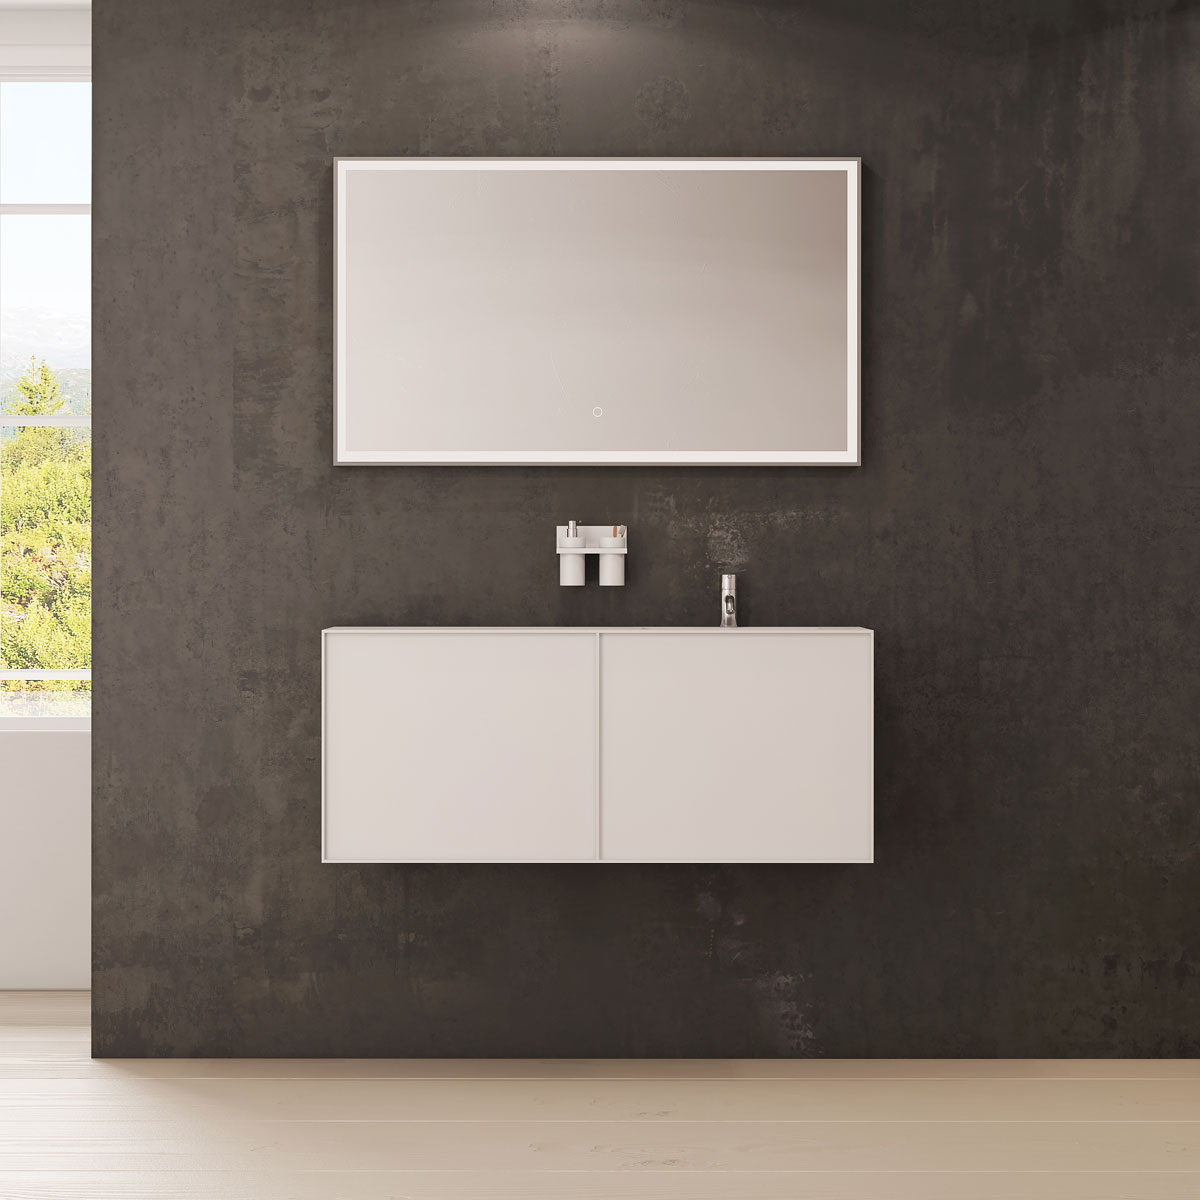 Nexø 120 kabinet med højre vask image